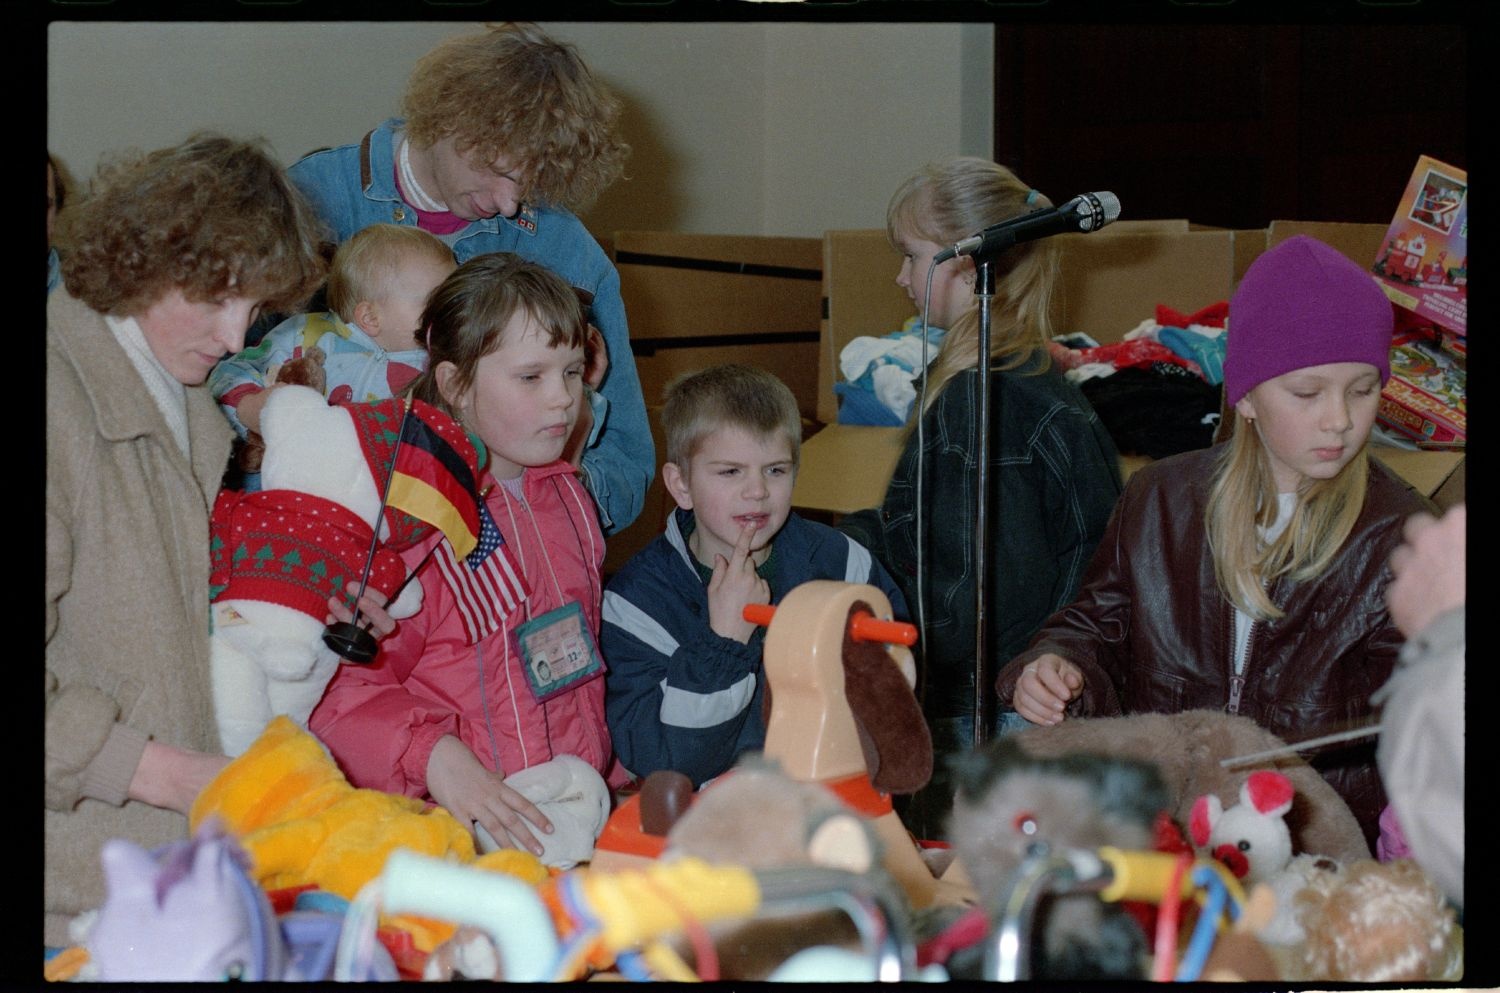 Fotografie: Übergabe von Spielzeugspenden für Kinder aus der DDR im Notaufnahmelager Berlin-Marienfelde